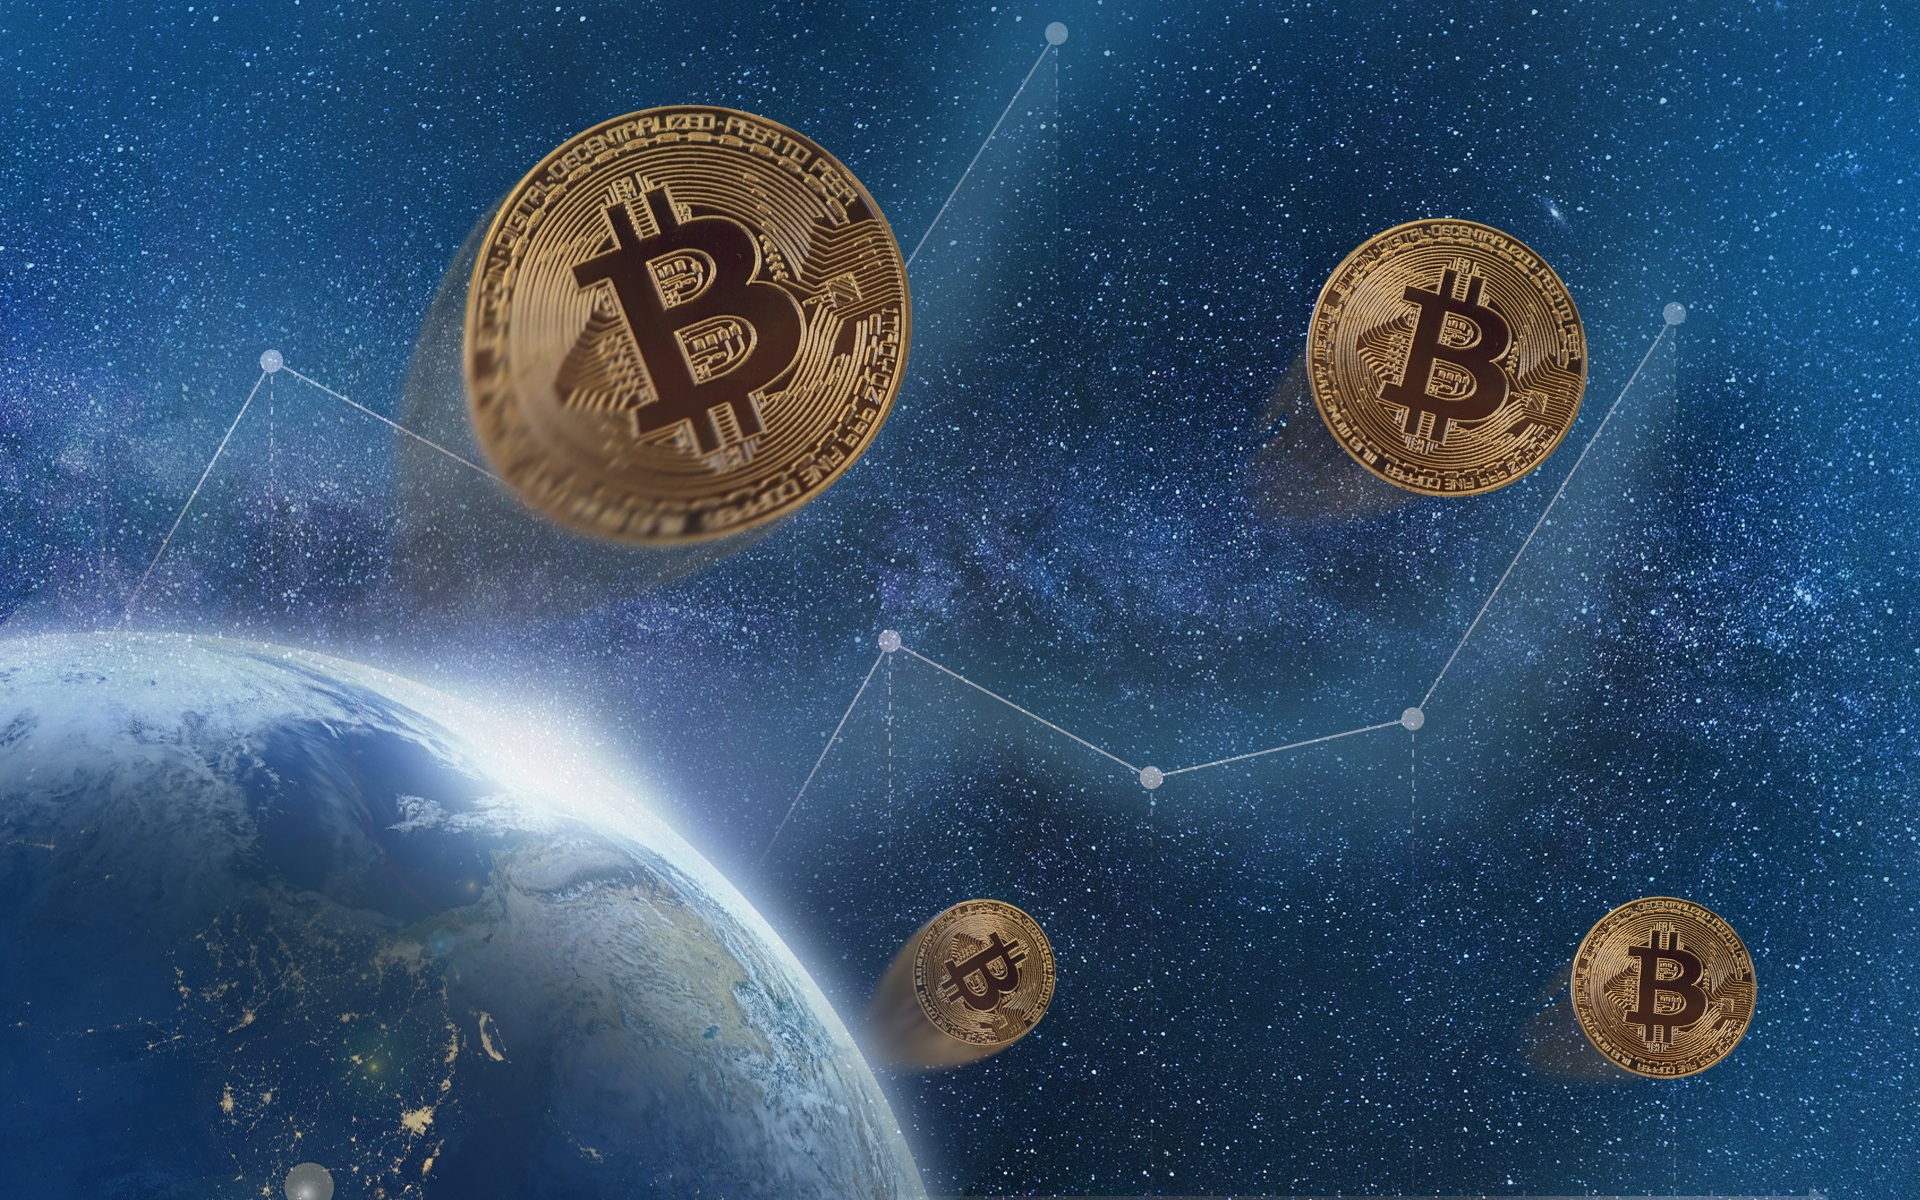 Koop Bitcoin – een introductie tot het kopen van digitale valuta